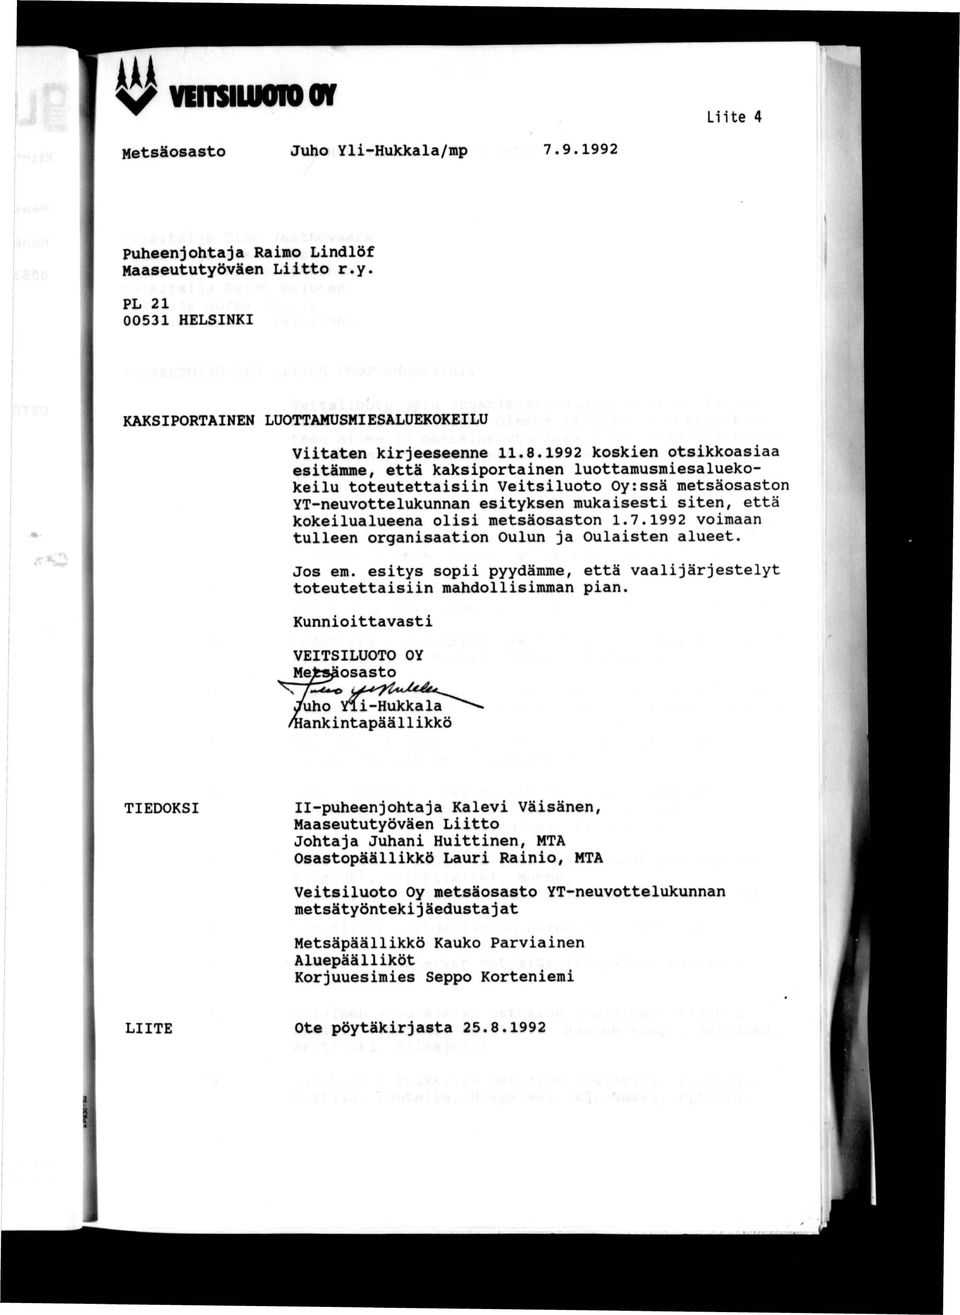 olisi metsäosaston 1.7.1992 voimaan tulleen organisaation Oulun ja Oulaisten alueet. Jos em. esitys sopii pyydämme, että vaalijärjestelyt toteutettaisiin mahdollisimman pian.